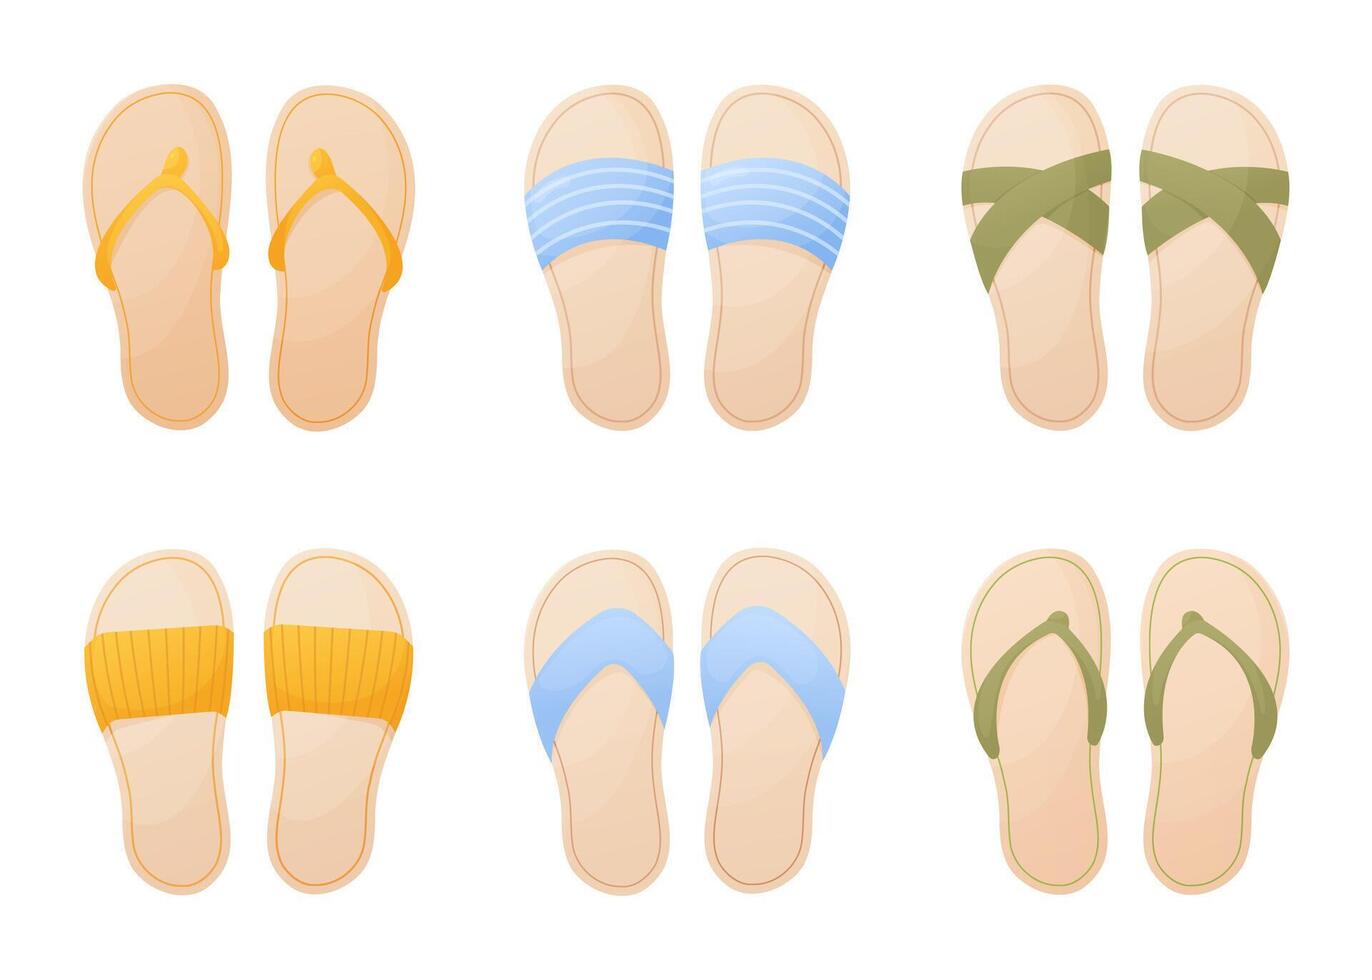 Sommer- Schuh Satz, Flip Flops, Hausschuhe zum Strand, Urlaub, komfortabel Sandalen, Gelb, Blau und Grün, Karikatur Stil Vektor Illustration